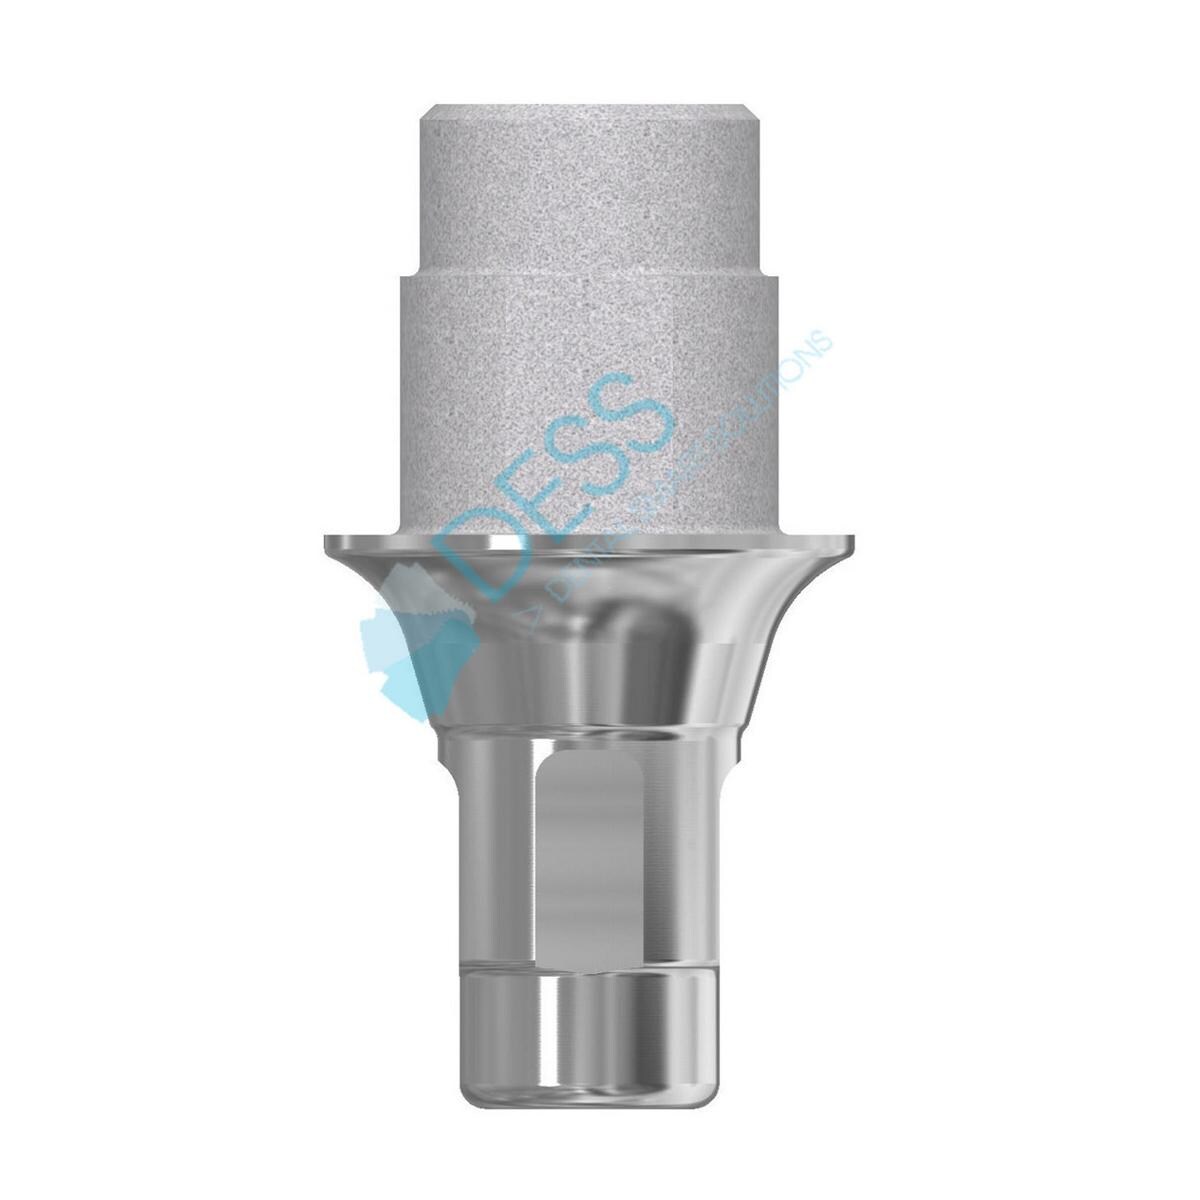 Titanbase - kompatibel mit Straumann® Bone Level® - RC Ø 4,1 mm, mit Rotationsschutz